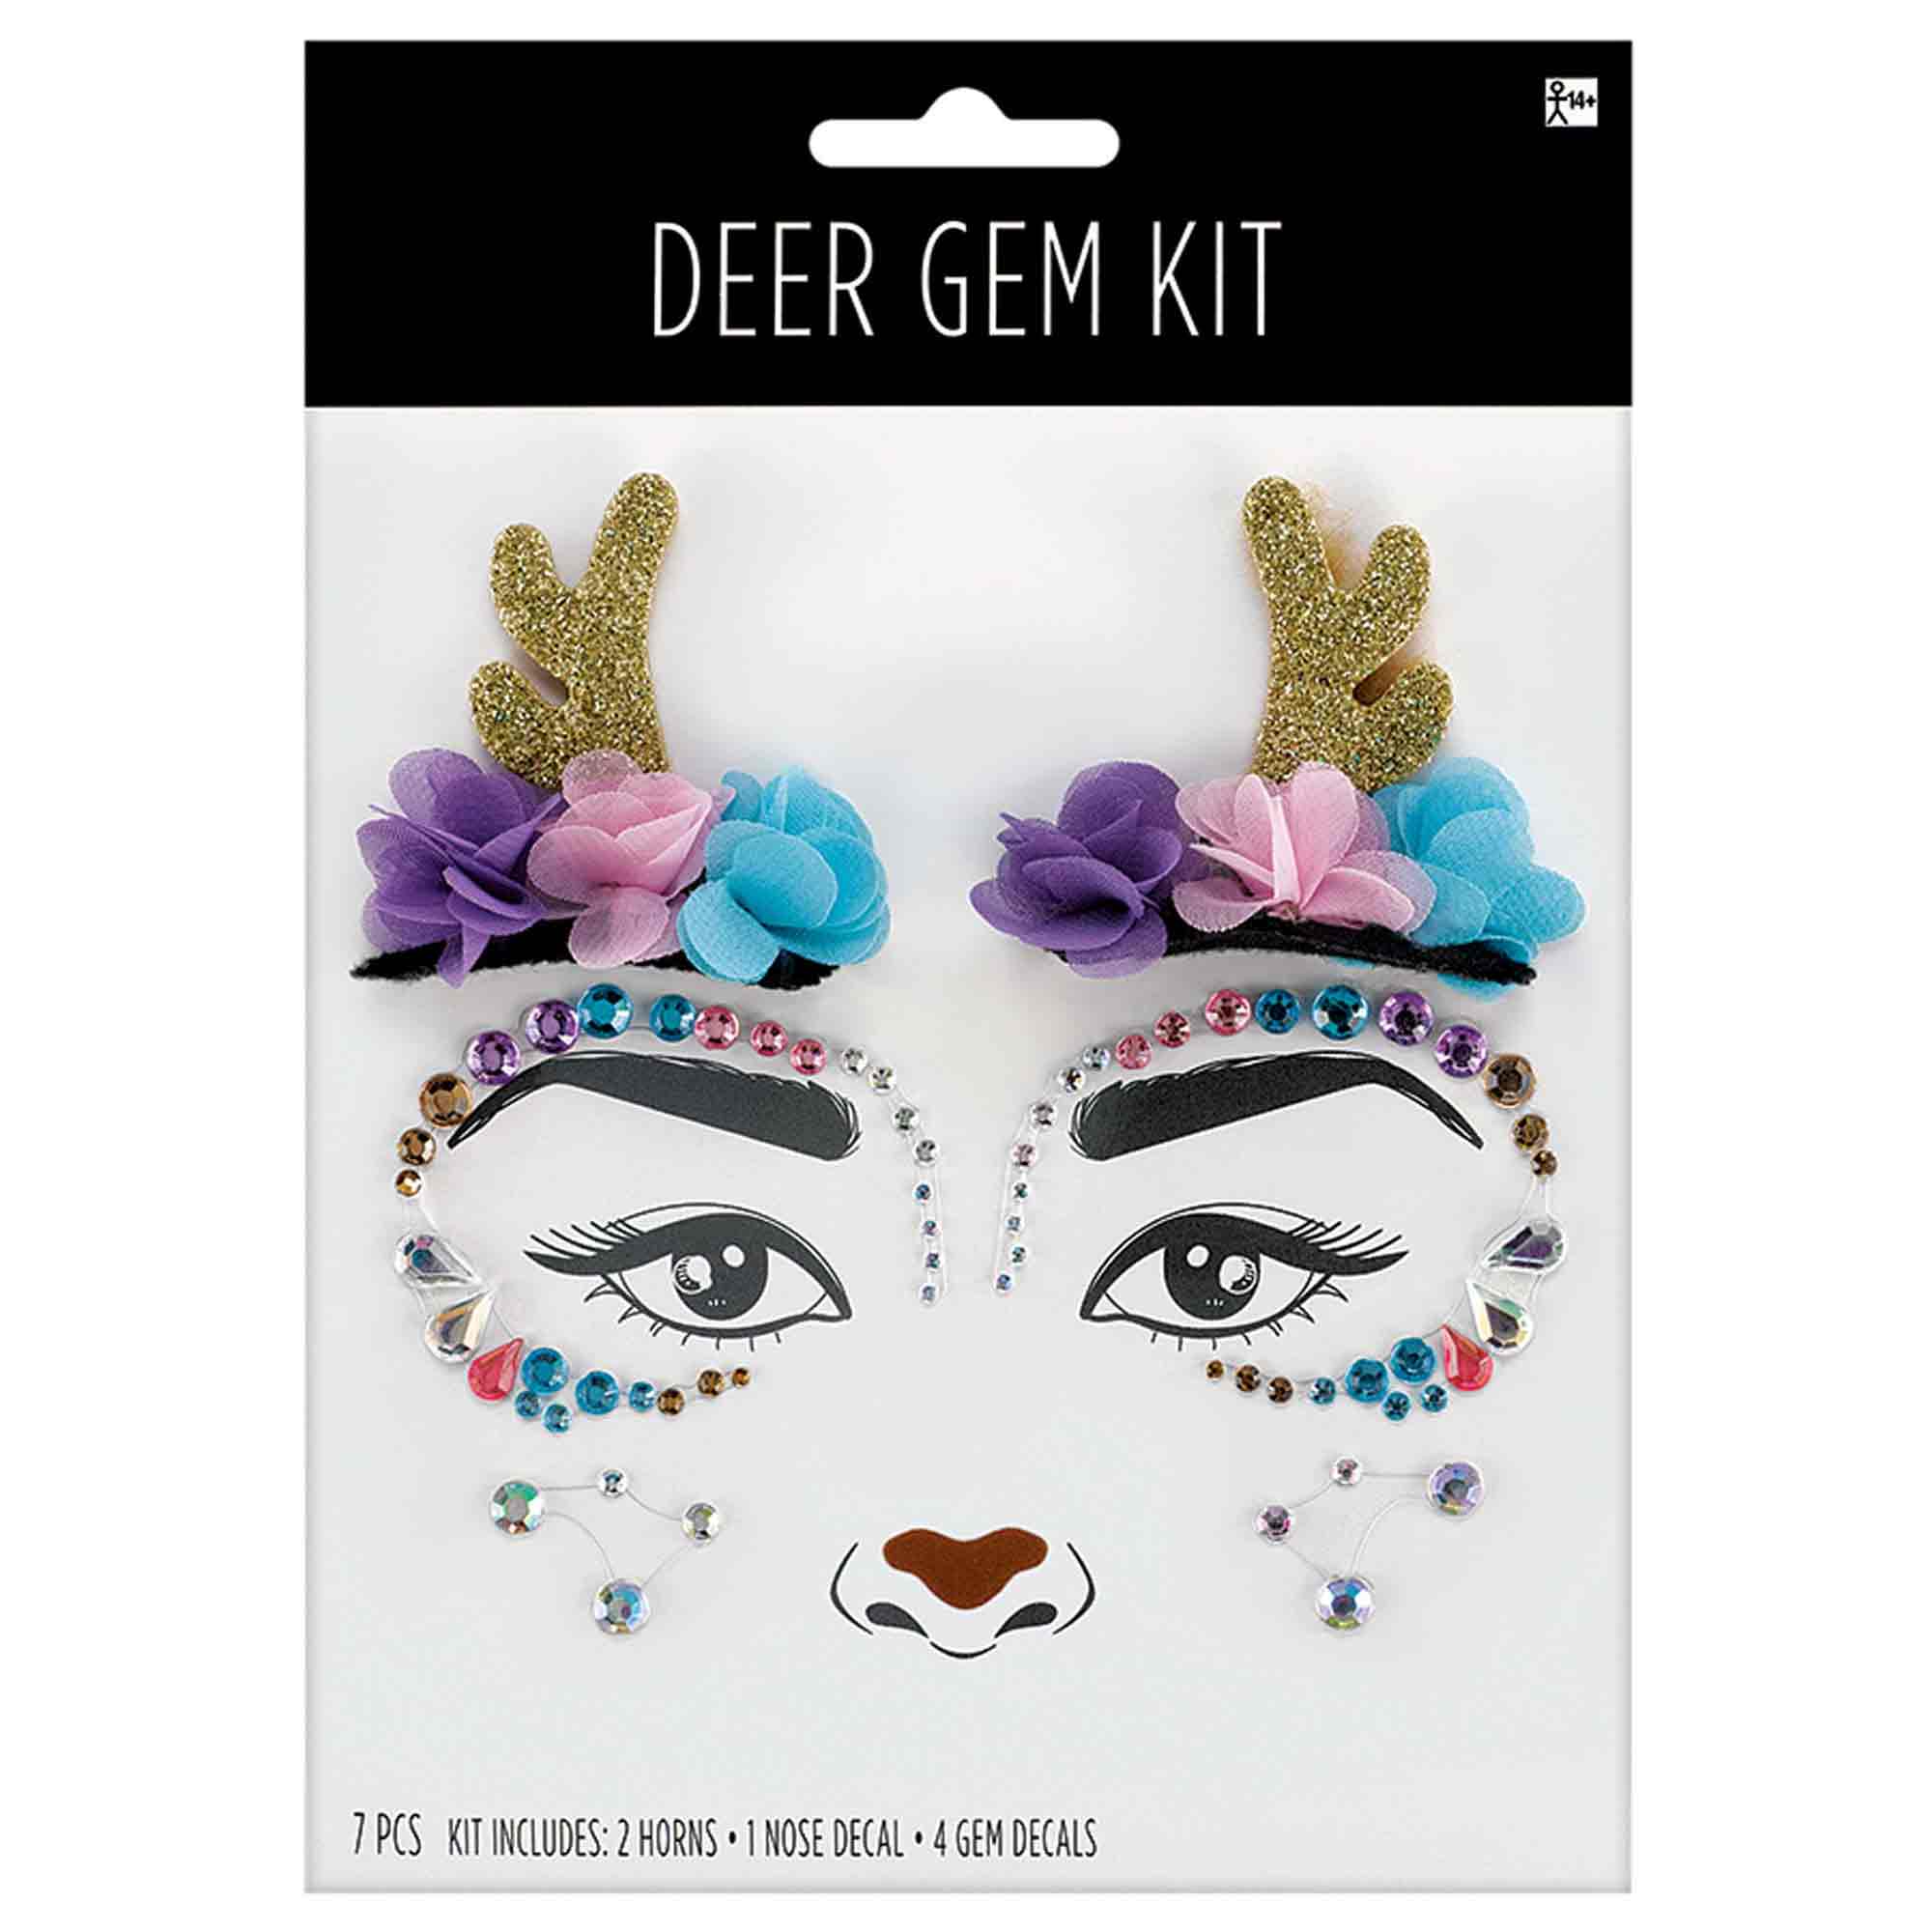 Deer Gem Kit with Horns